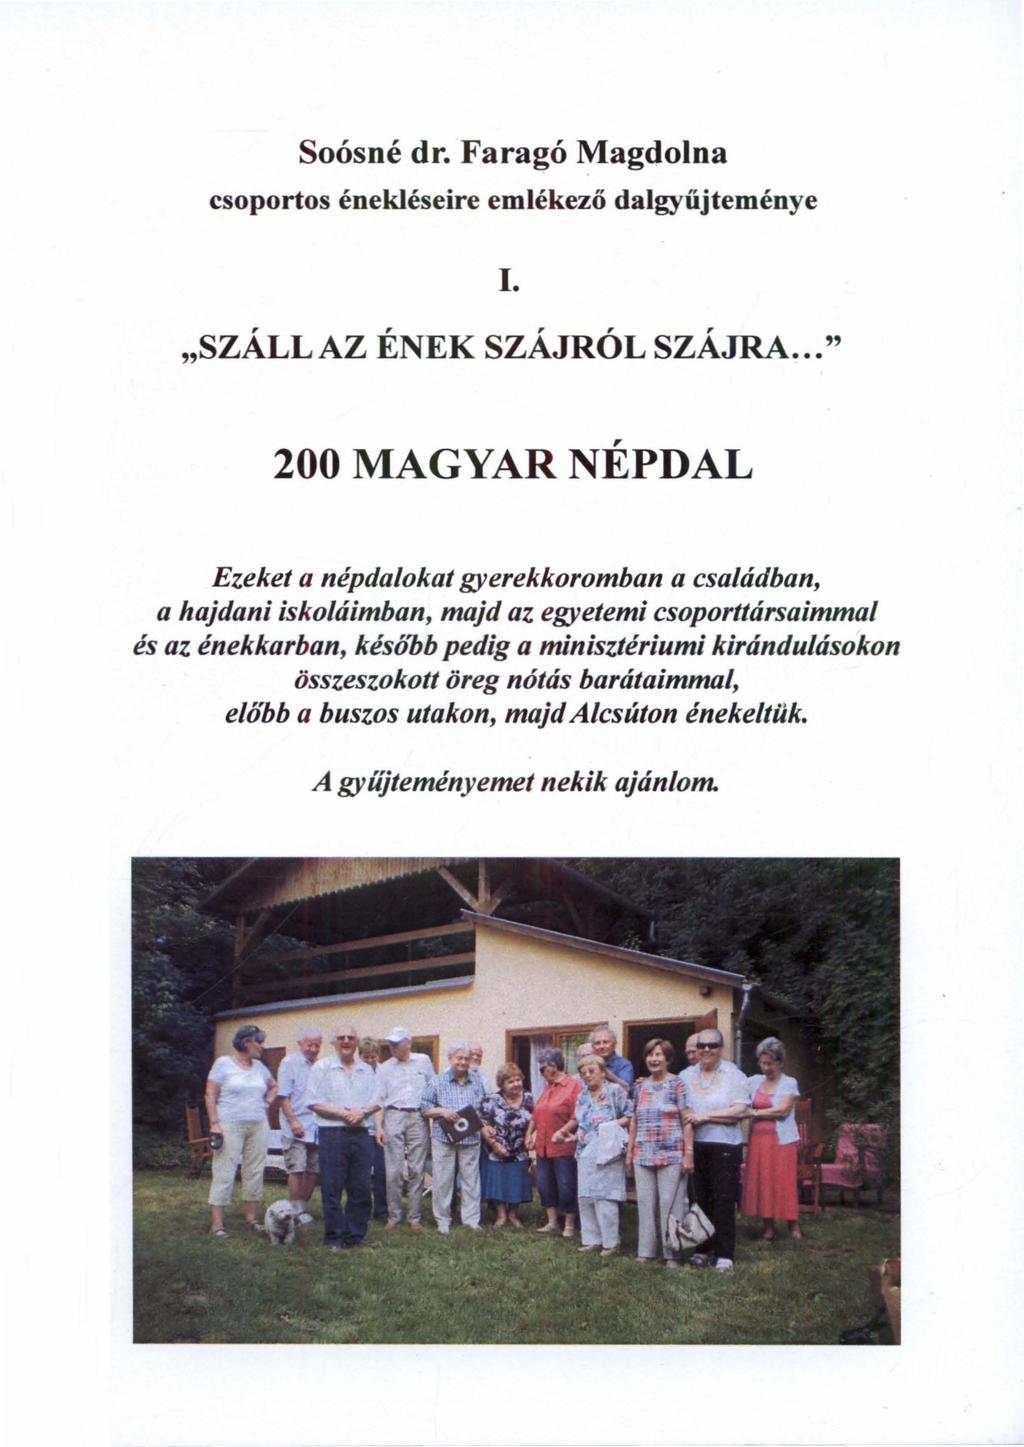 Soósné dr. Faragó Magdolna "SZALLAZ ENEK SZAJROL SZAJRA..." - PDF Ingyenes  letöltés